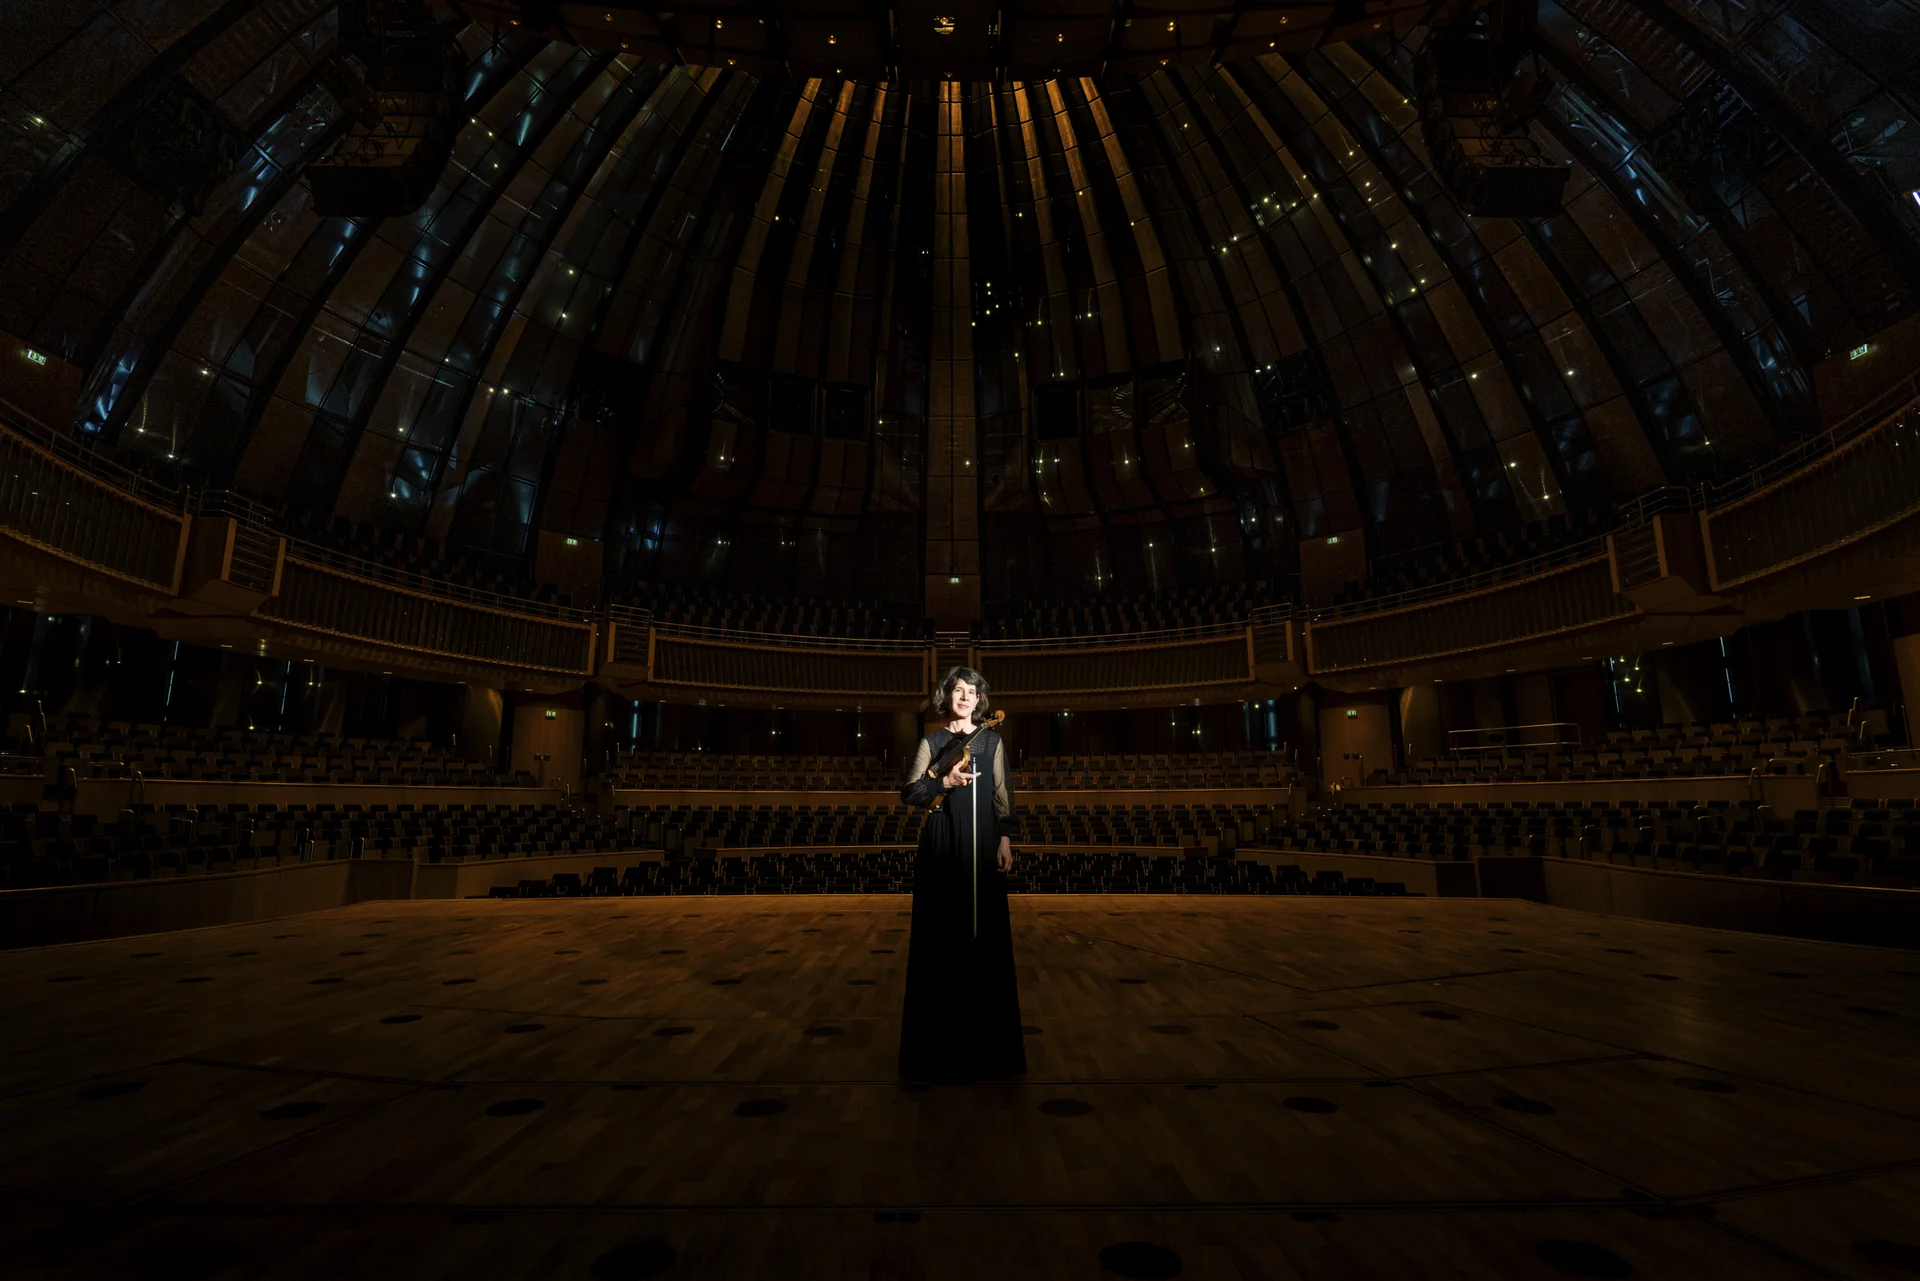 Lichtspot auf Person im Kleid in der Mitte eines Konzertsaals